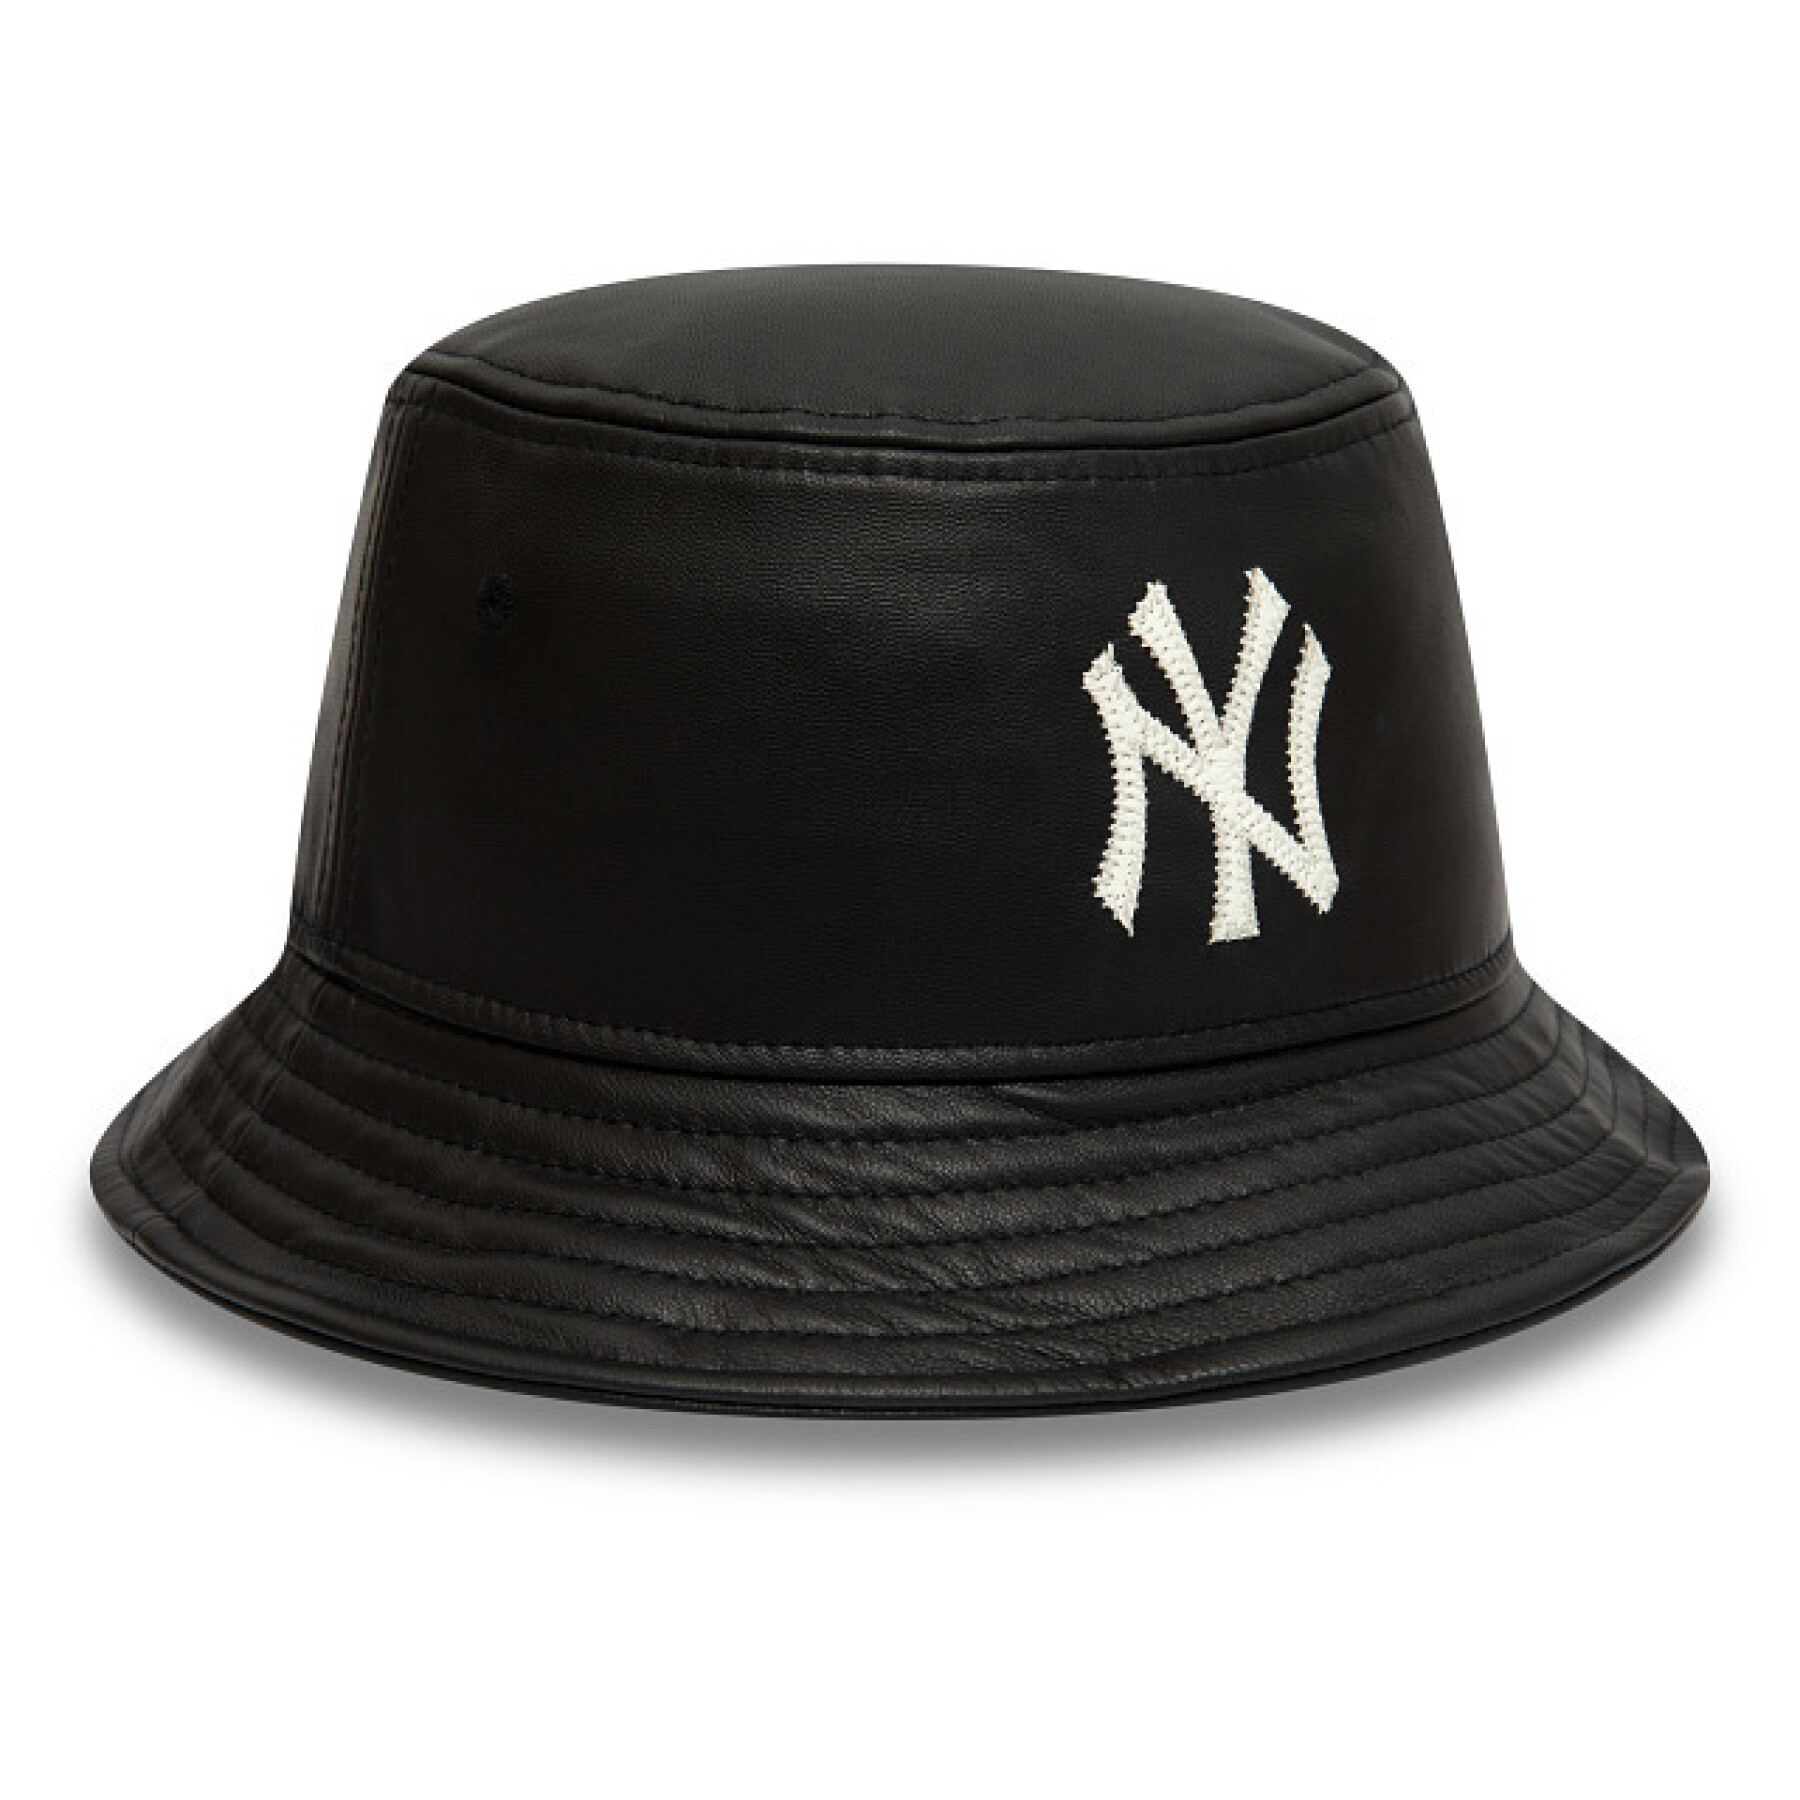 Bob New York Yankees MLB